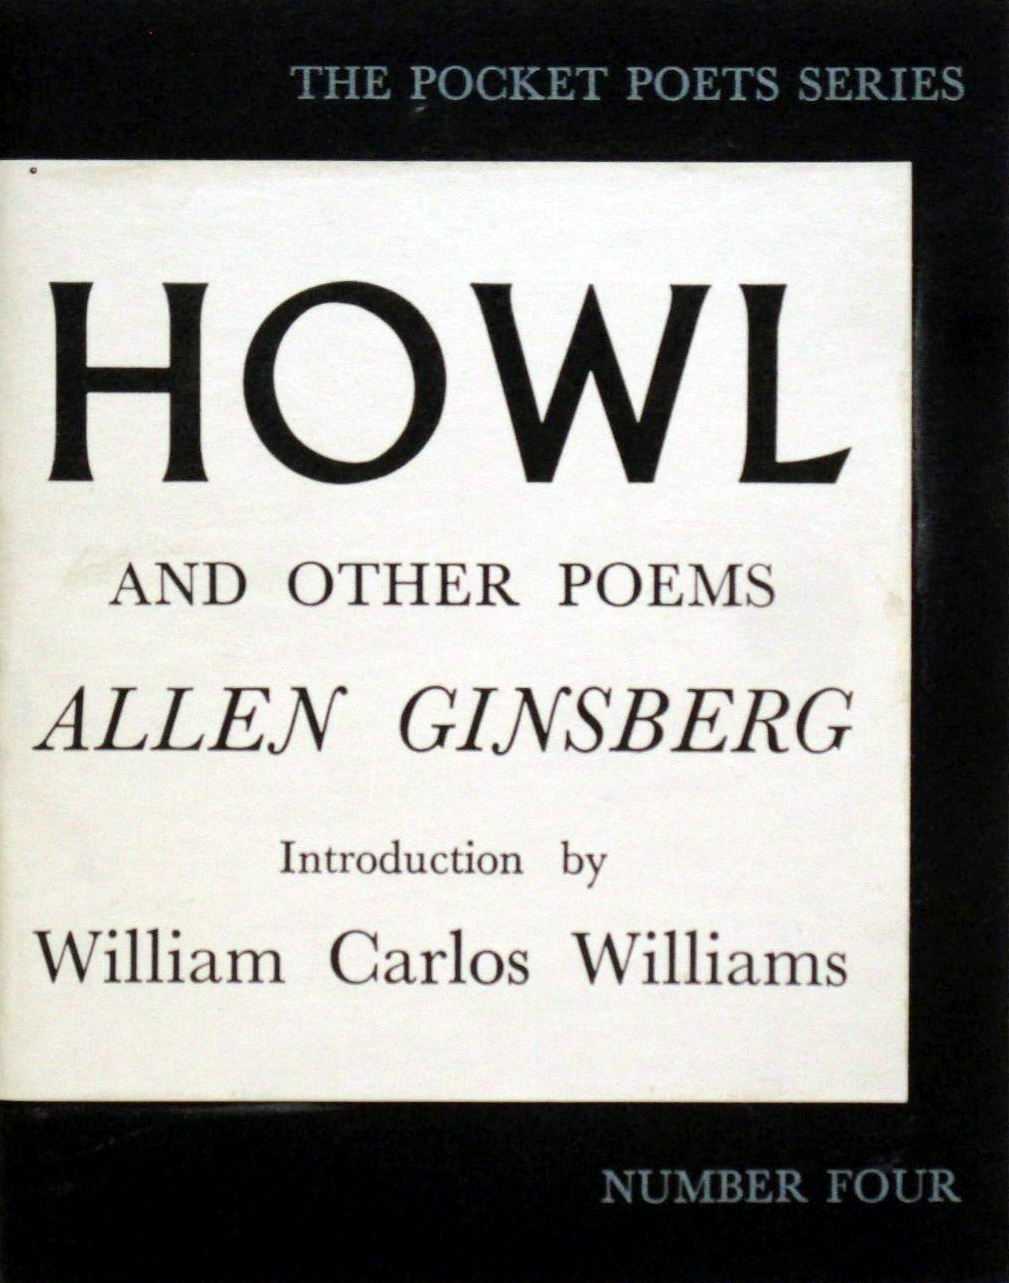 Original cover of Allen Ginsberg's books, HOWL 